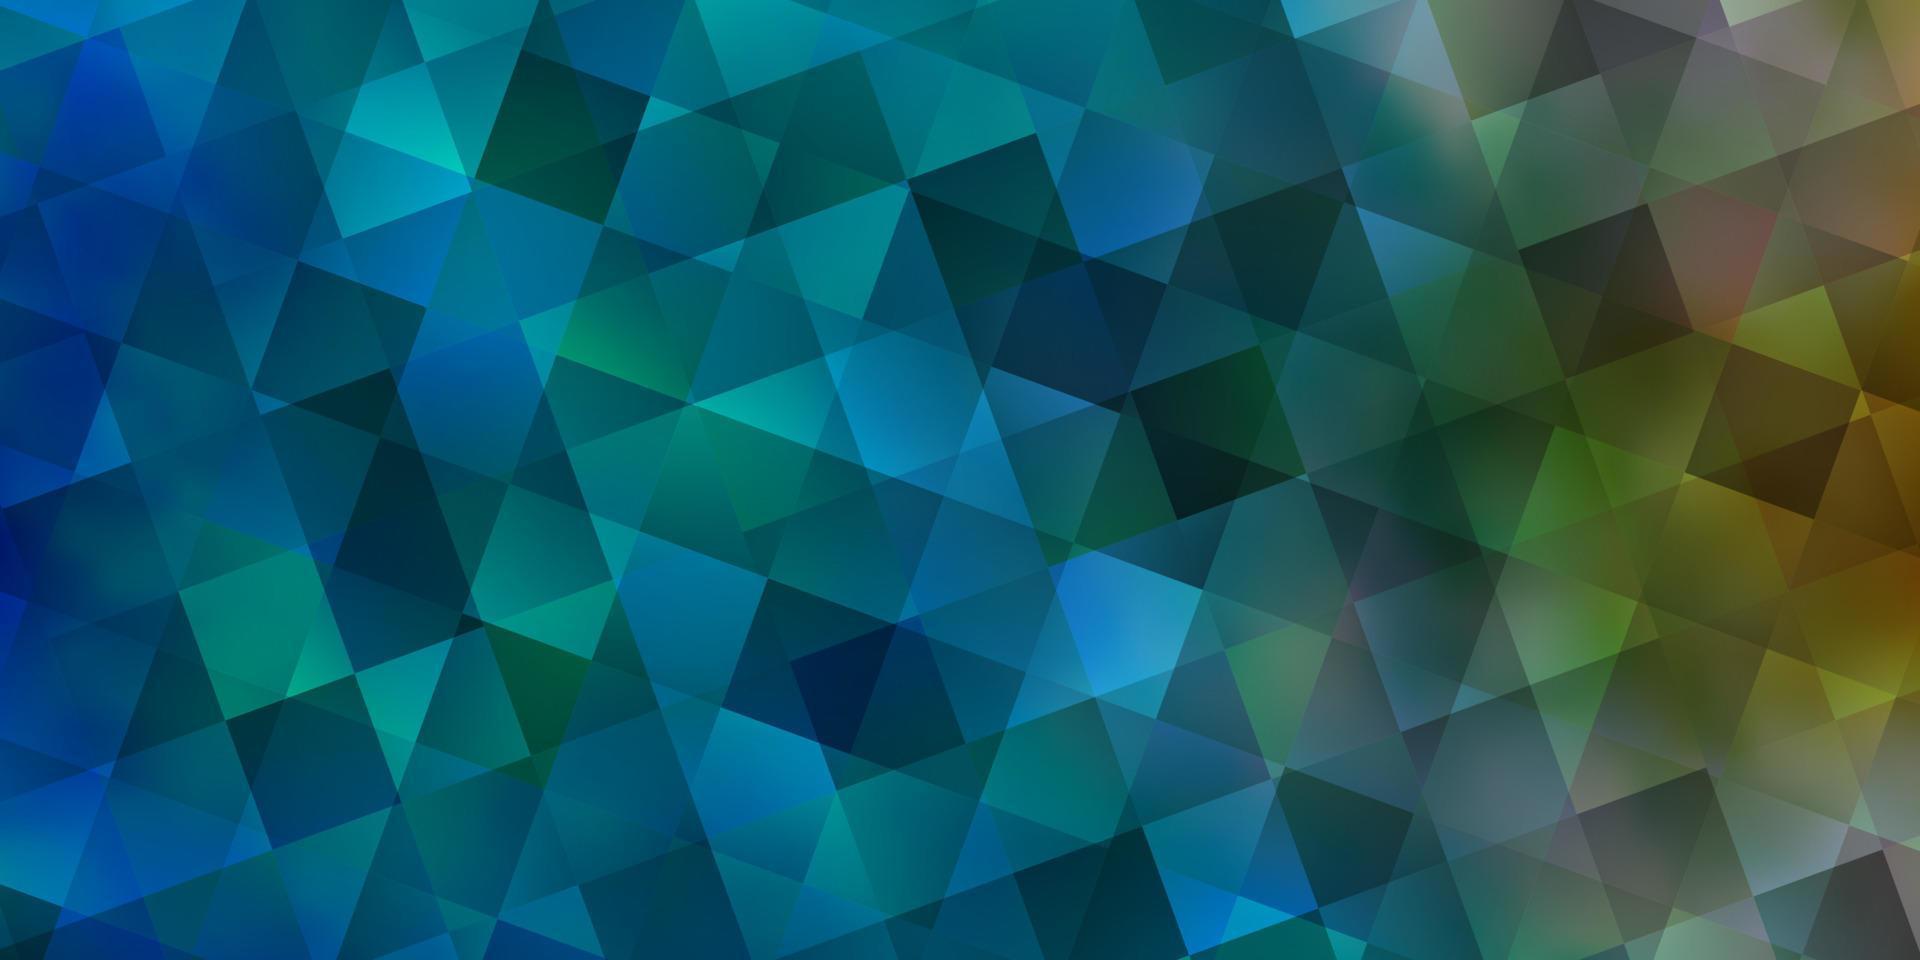 padrão de vetor azul claro com estilo poligonal com cubos.